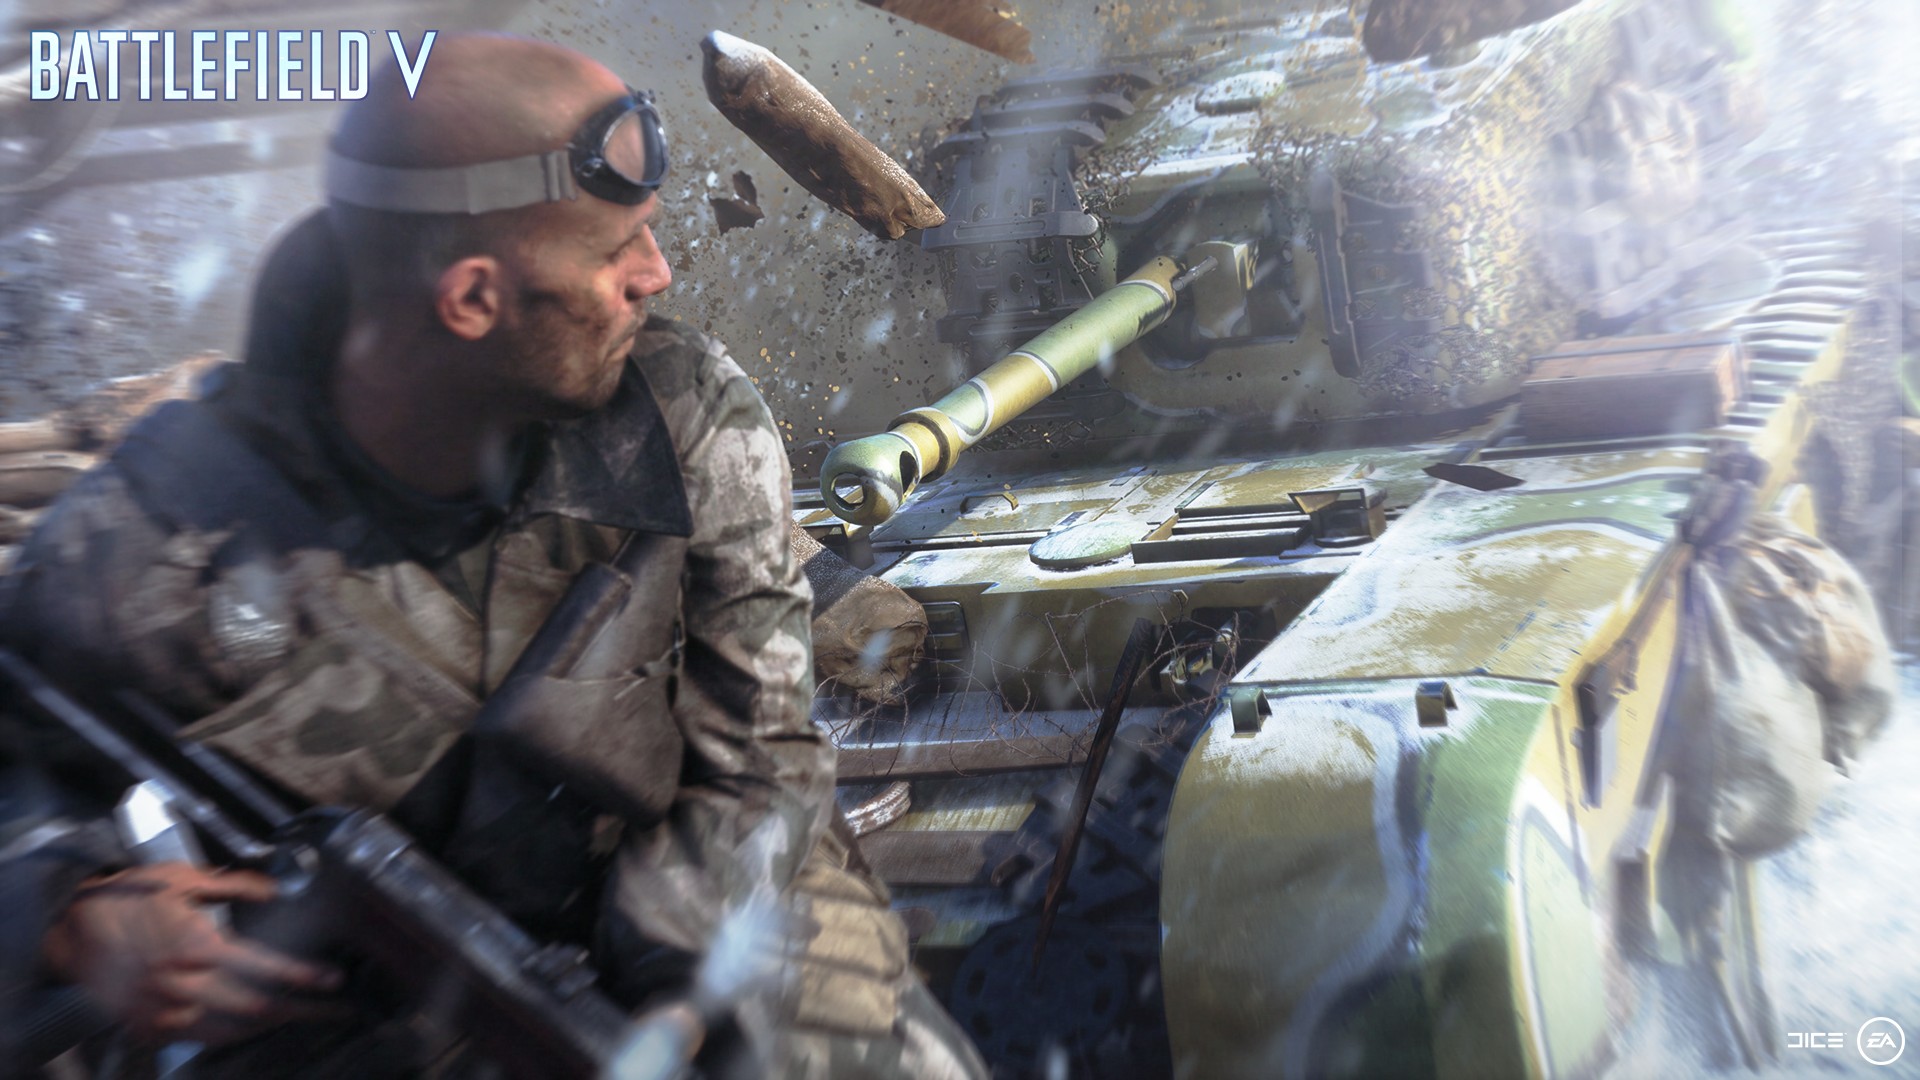 Battlefield V Xbox One